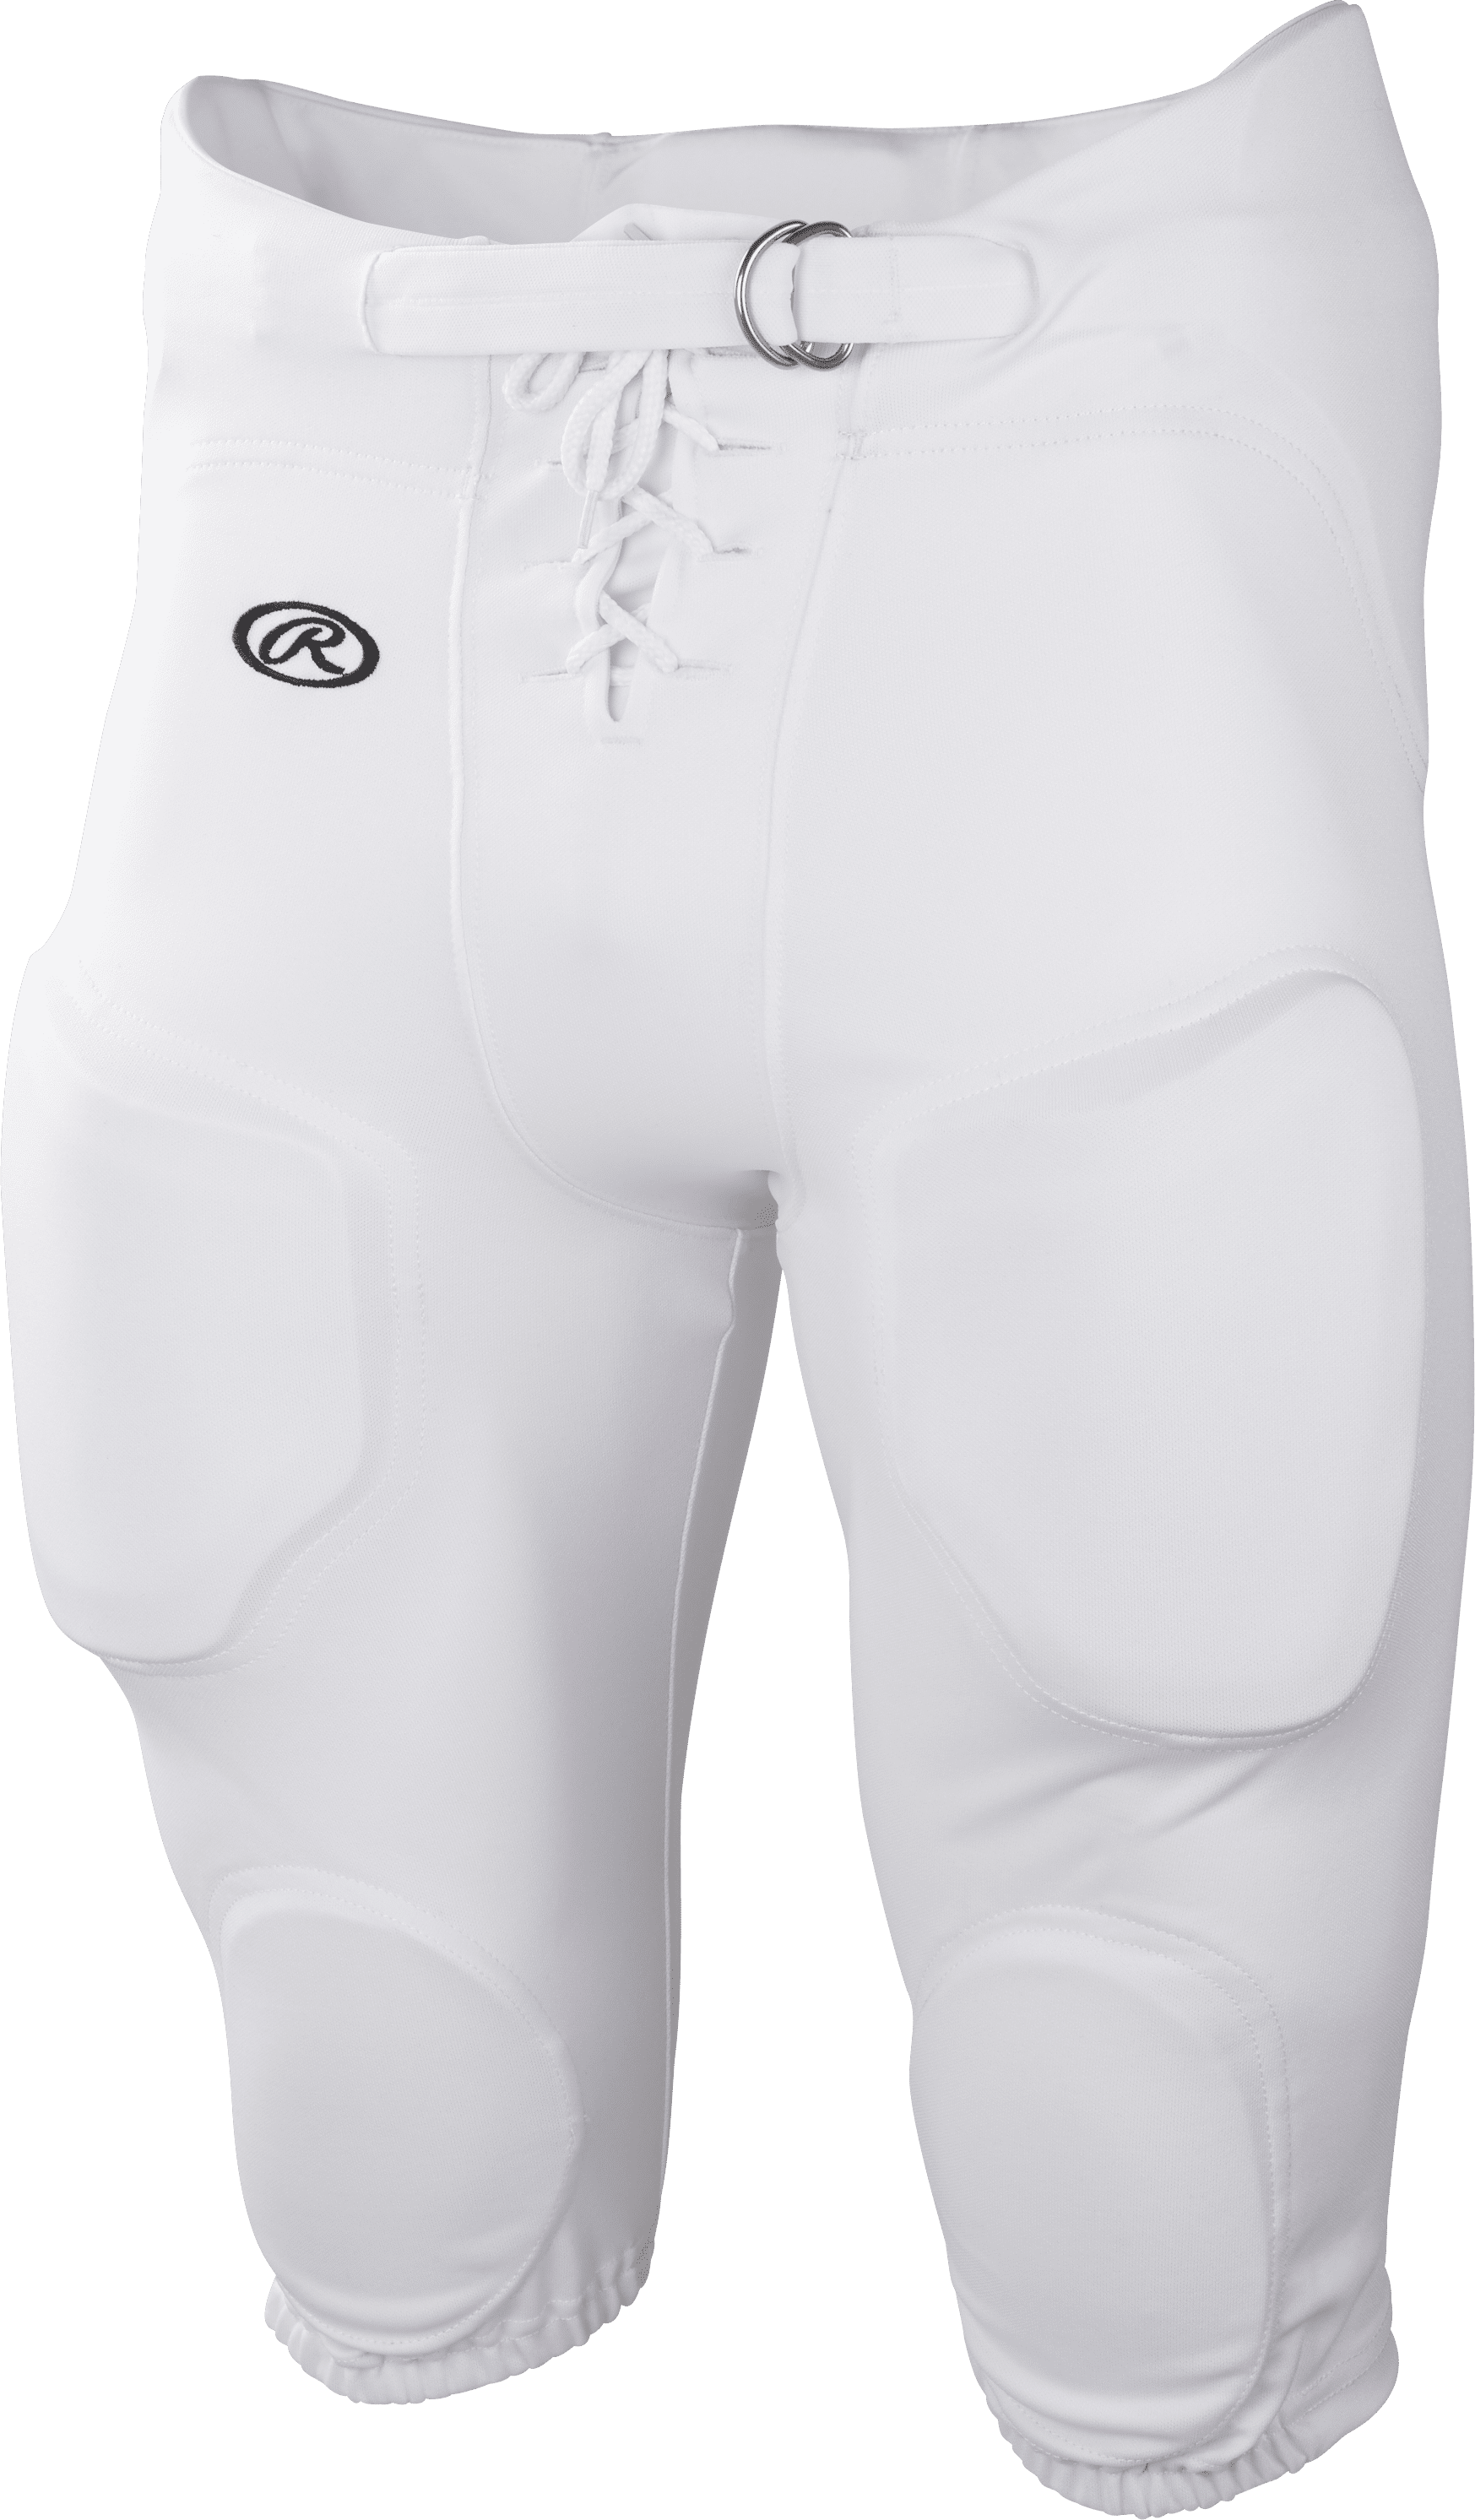 Anaconda Youth Boys Kids Practice Football Pants White Size Large 